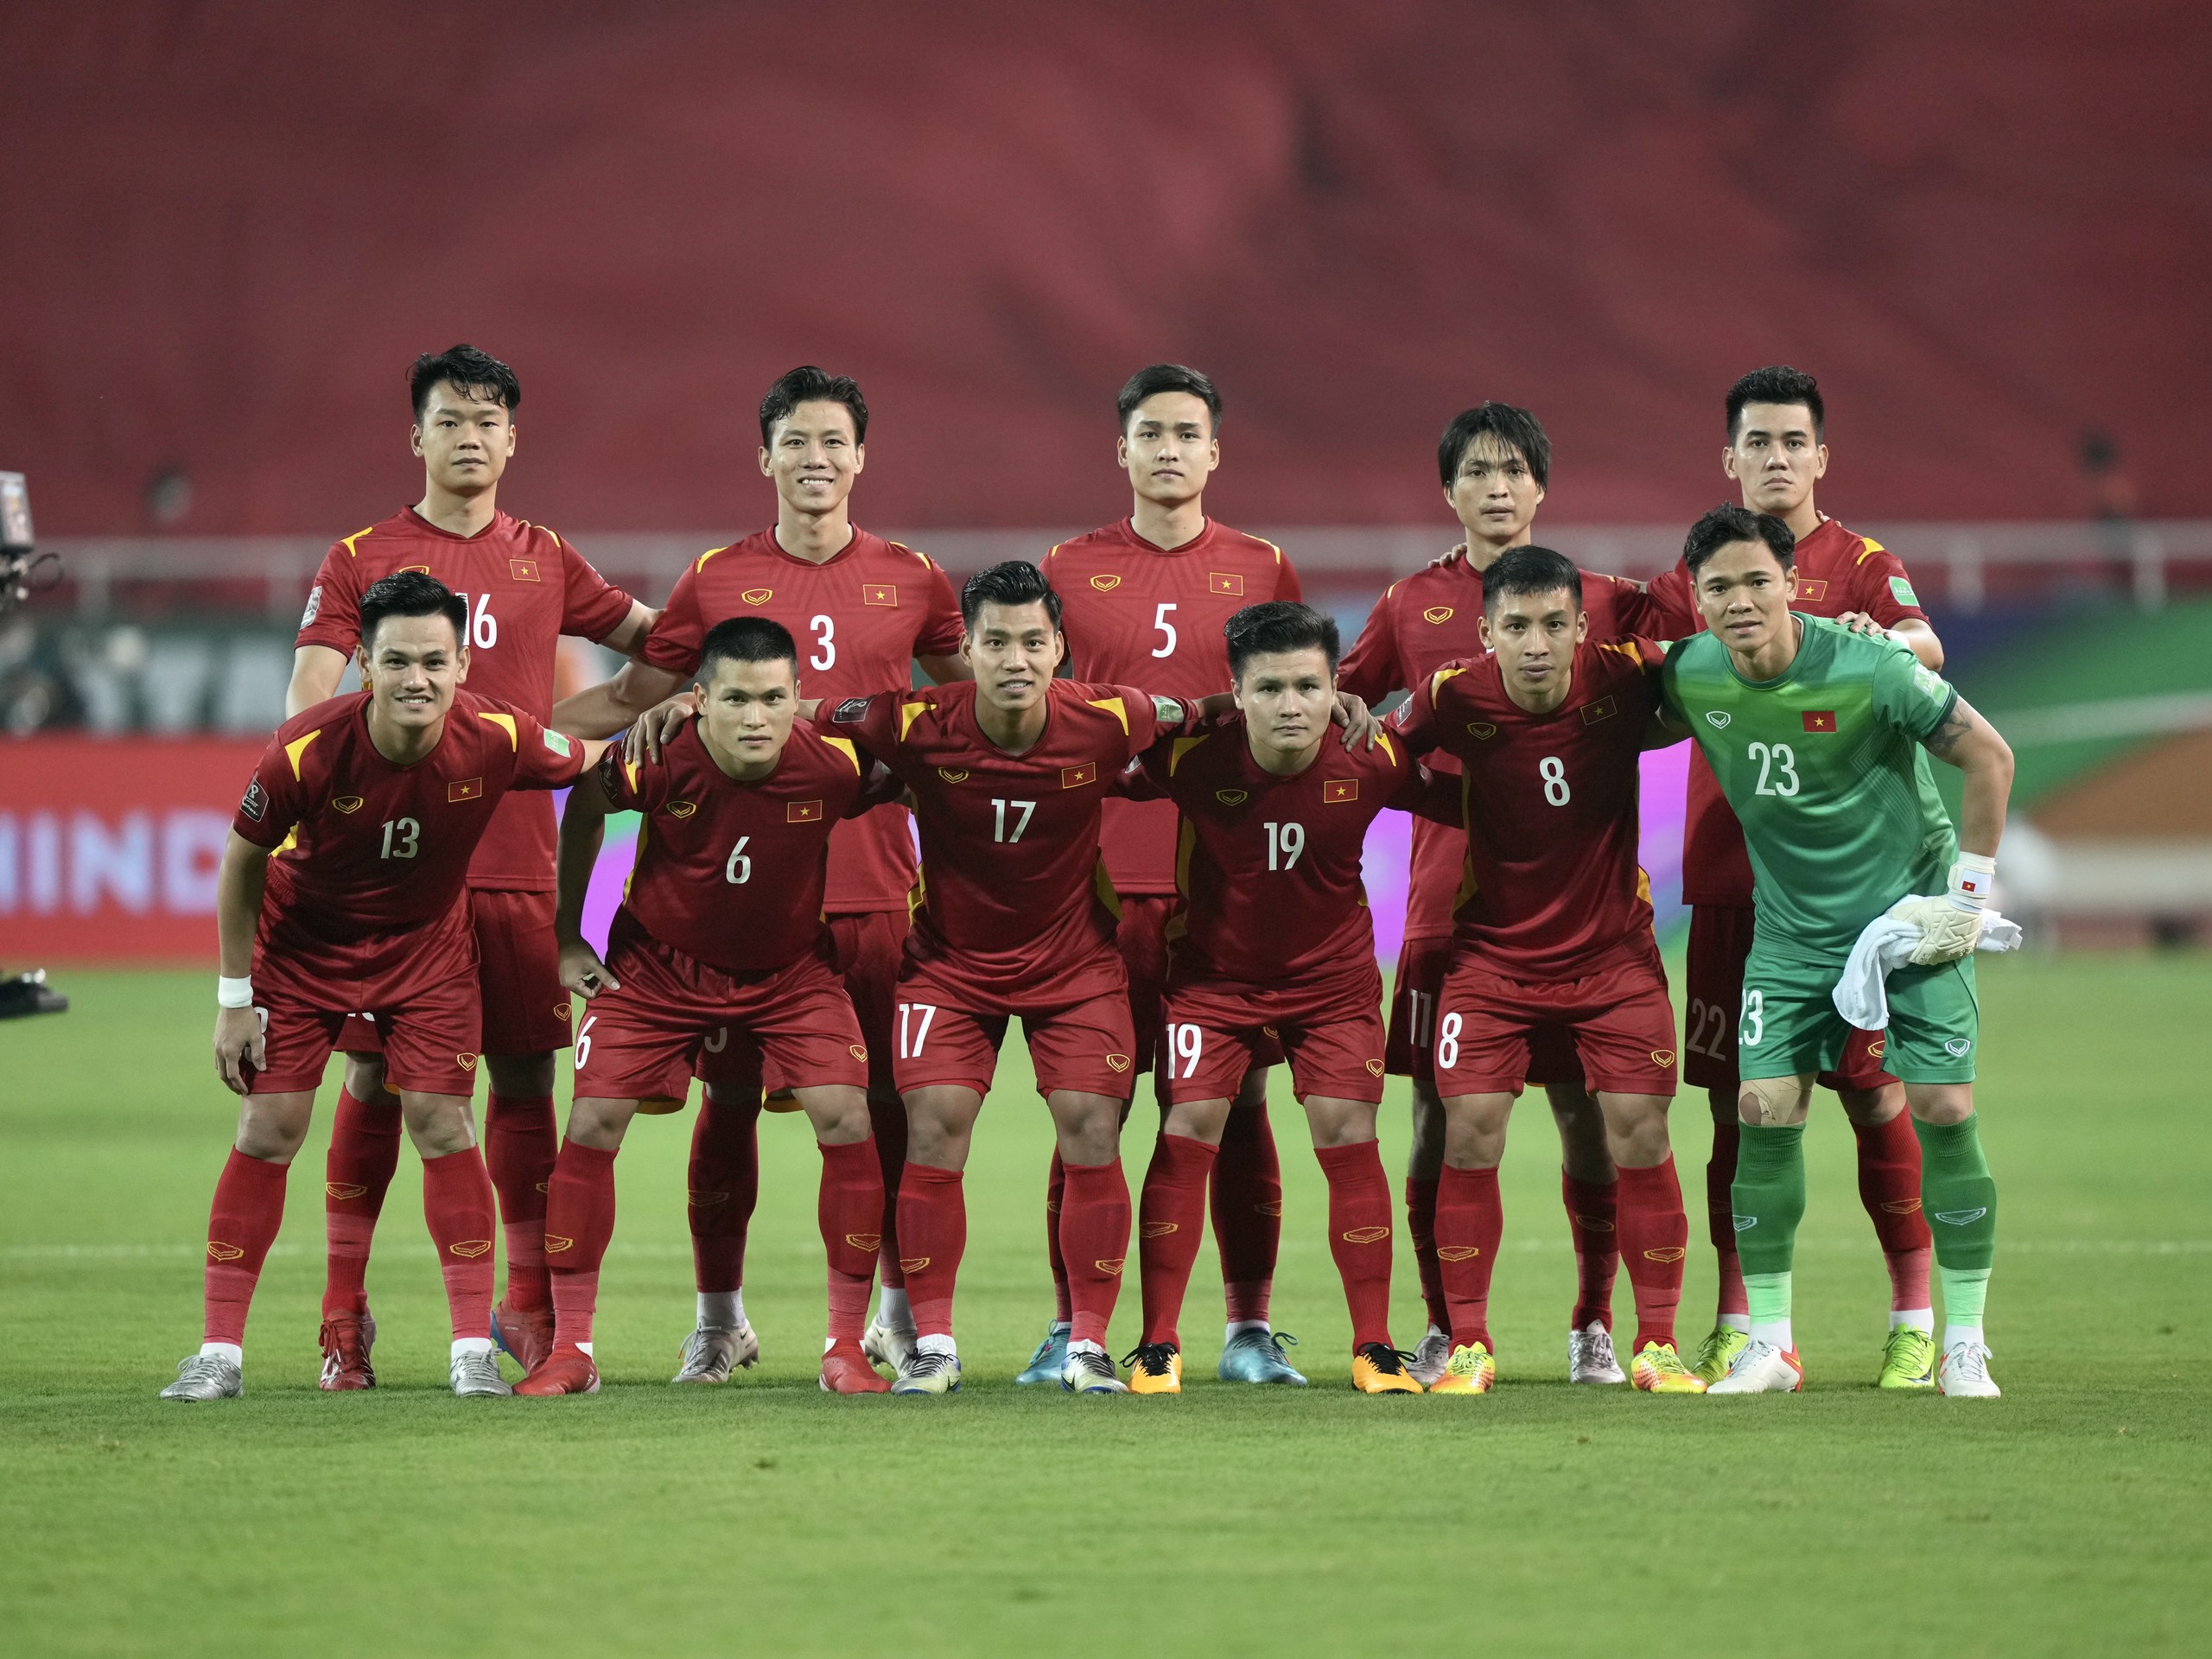 Tám năm nữa, Việt Nam sẽ là quốc gia đăng cai World Cup 2026! Chuyện đó không chỉ đơn thuần là một đề án, mà là hy vọng, là thứ giấc mơ trở thành hiện thực. Hãy cùng xem qua những kế hoạch và chiến lược dựng đứng dự án World Cup 2026 của Việt Nam.